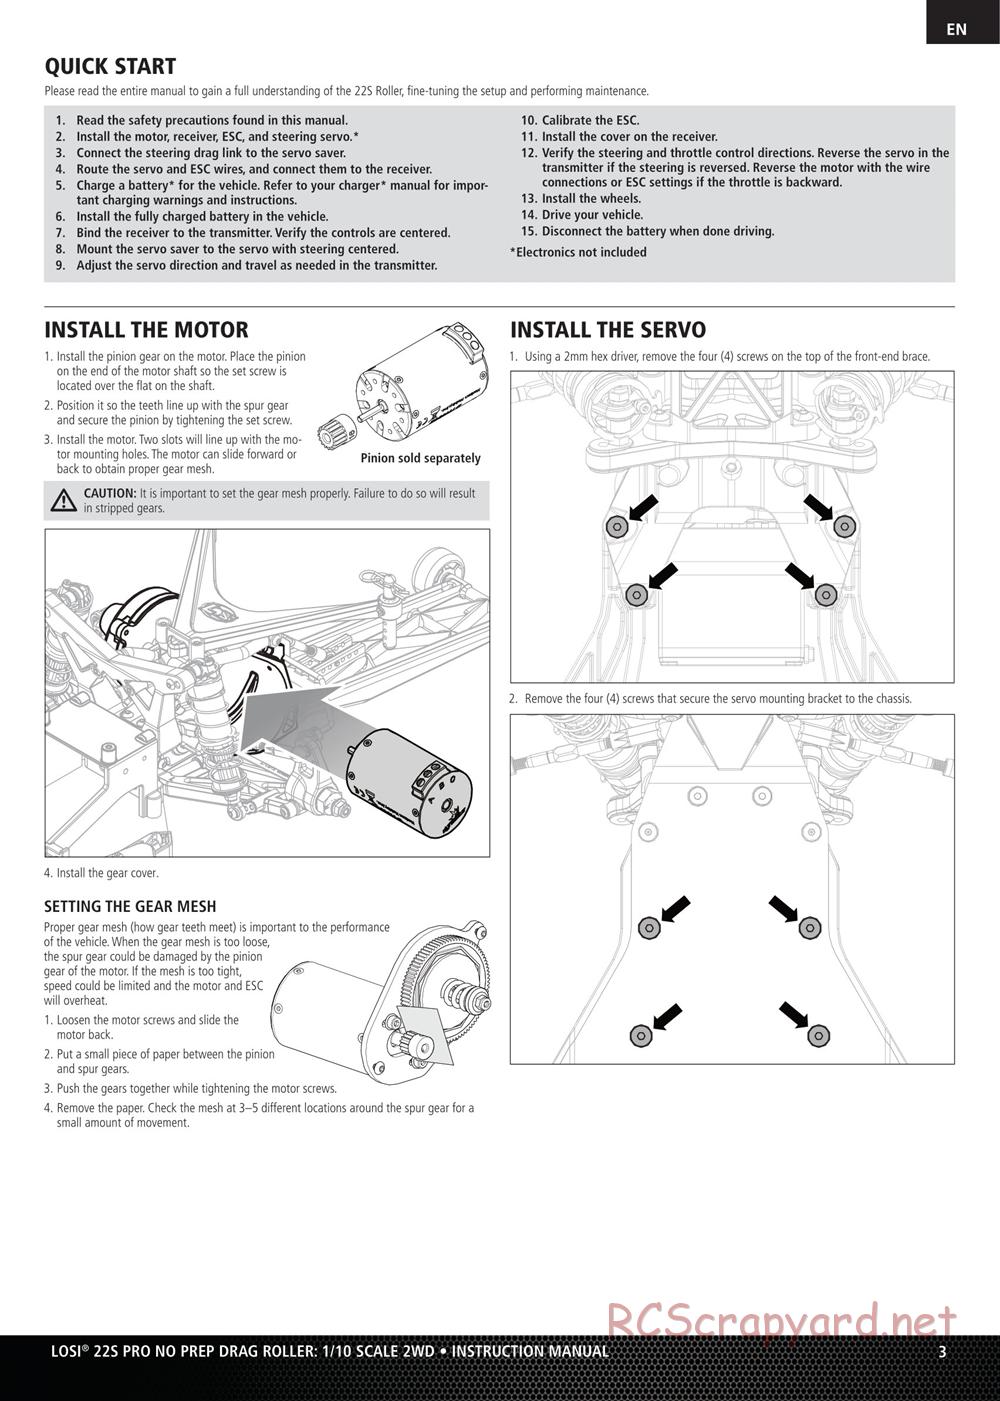 Team Losi - No Prep Drag Roller - Manual - Page 3